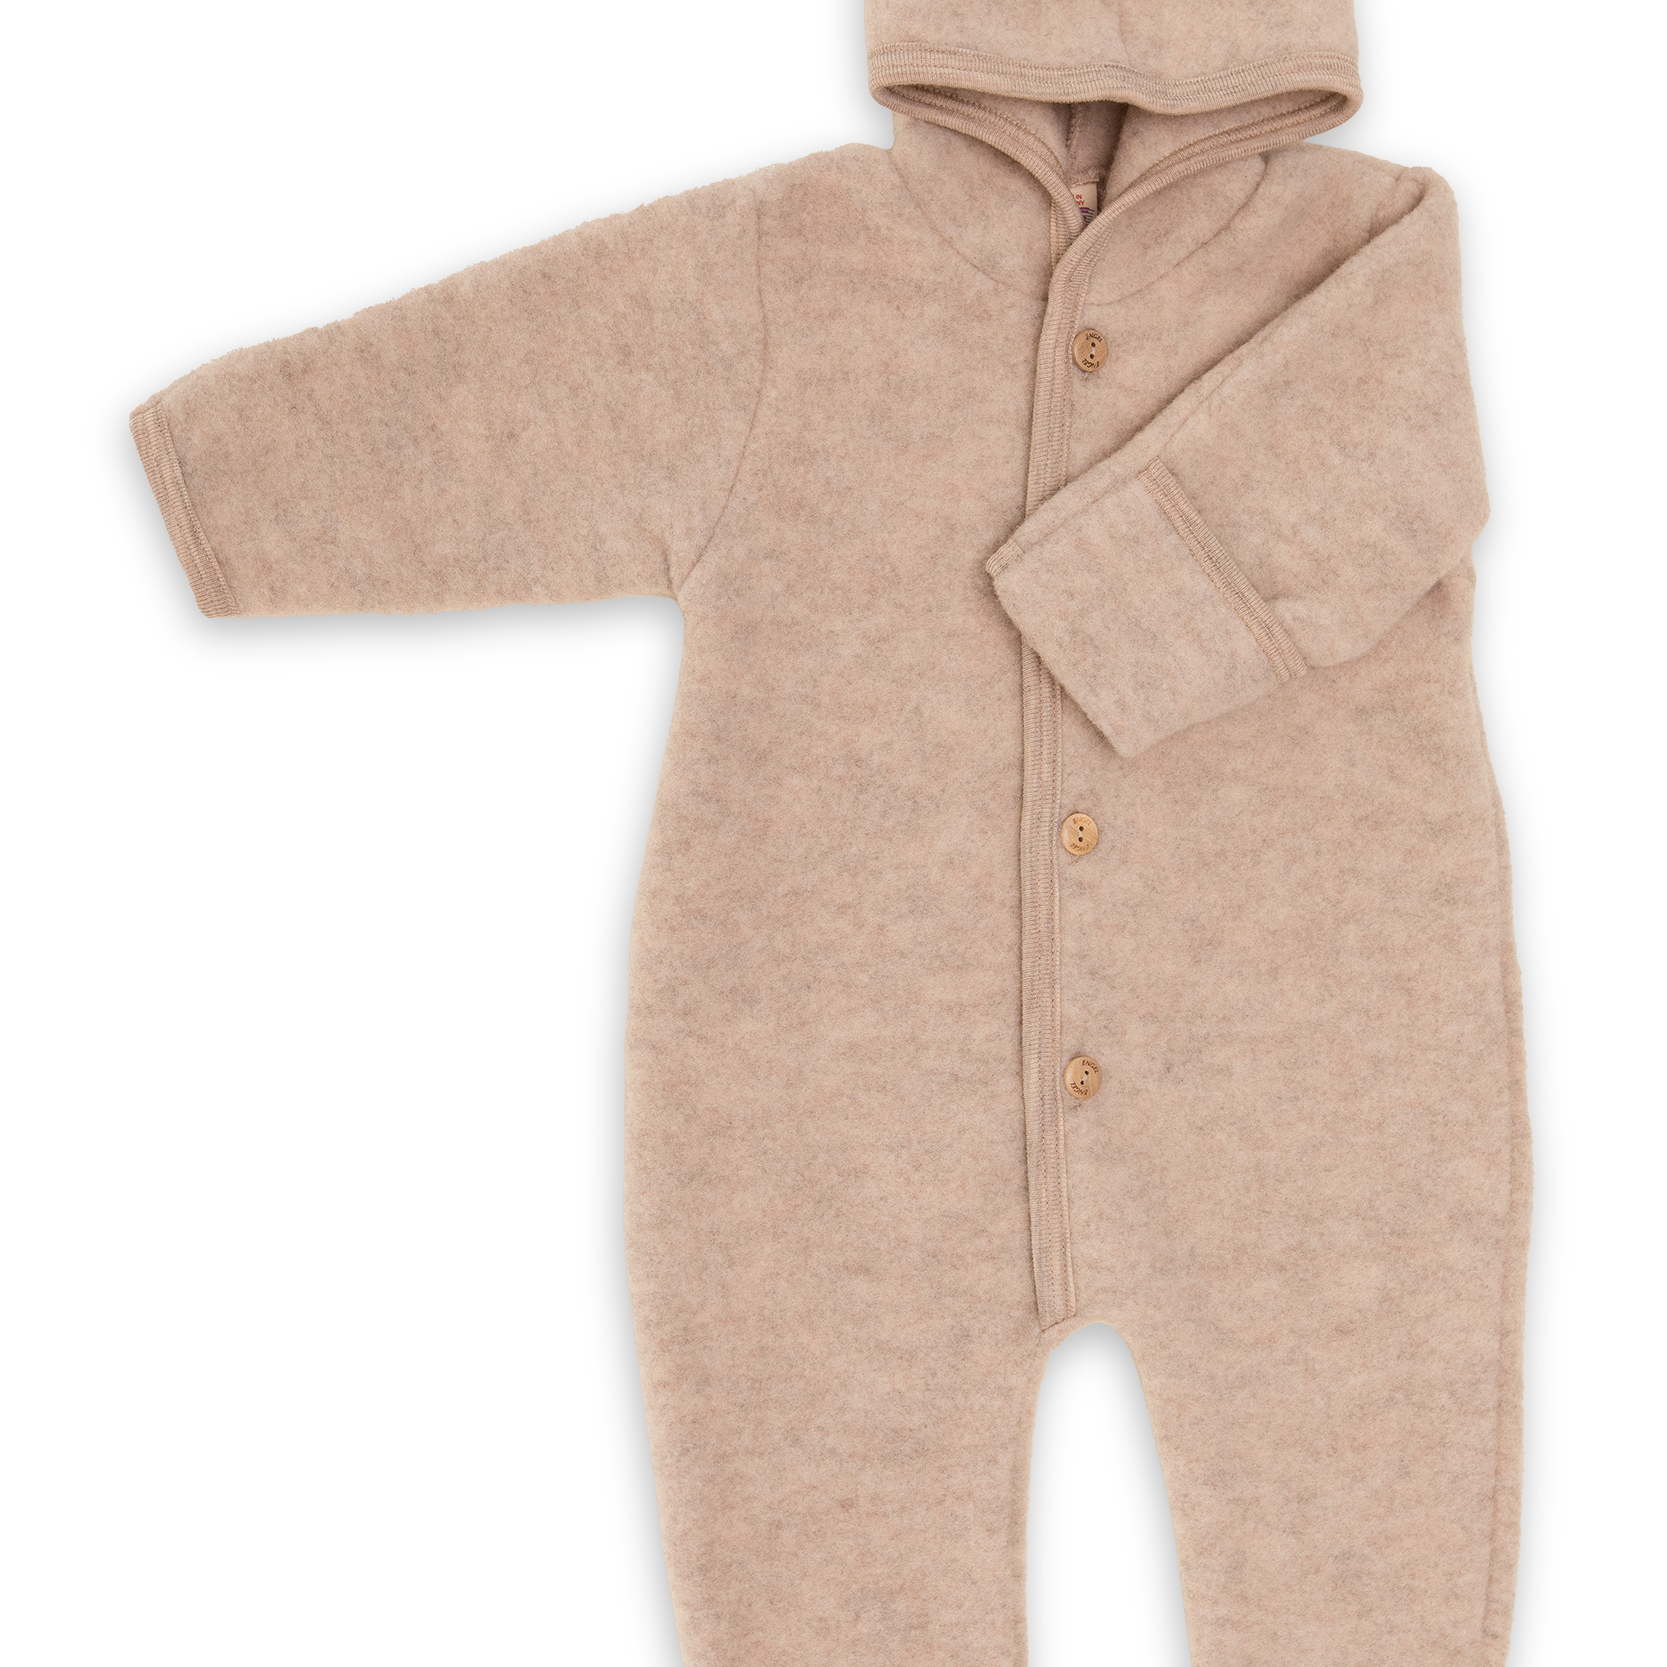 Baby Overall mit Kapuze Wollfleece